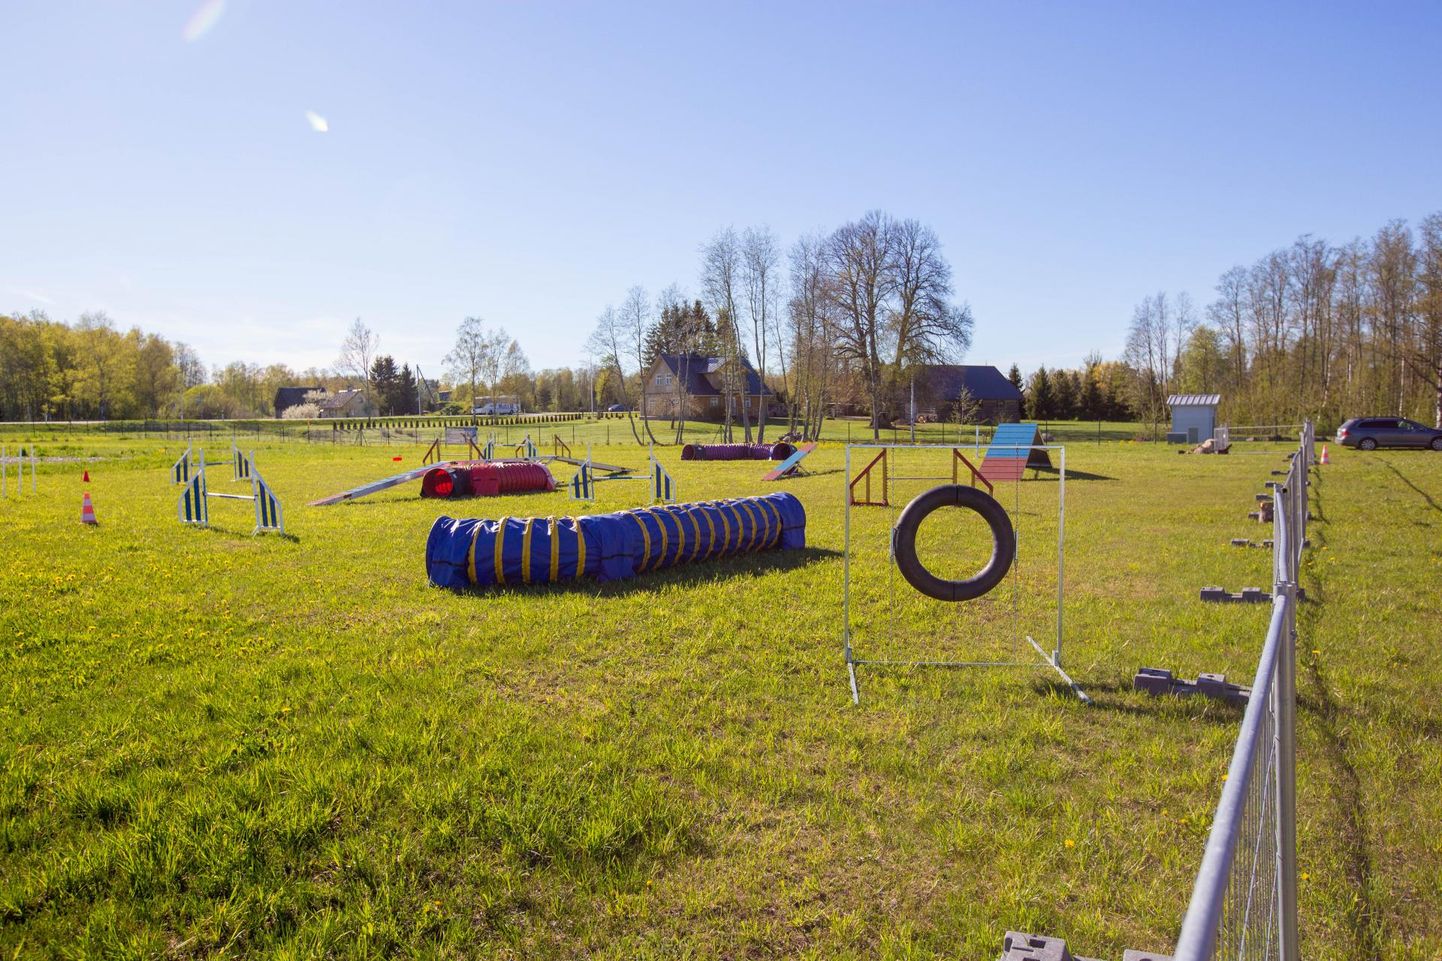 Päides on MTÜ Rakvere Koeraspordi Klubi treeninguplats, kus saab koertega käia kuulekuskoolis, agility-treeningul ja kutsikakoolis.